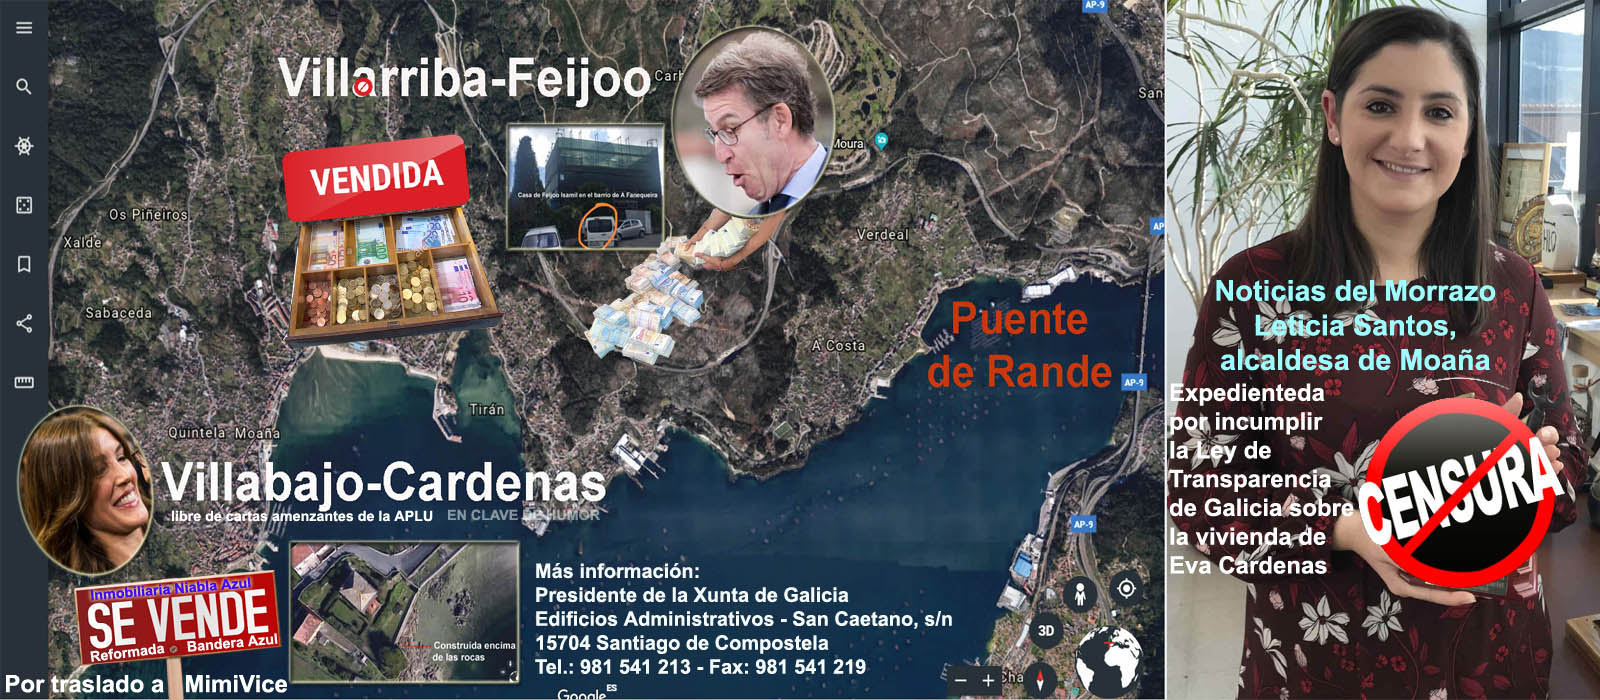 La Comisión de Transparencia de Galicia abre expediente de investigación  sobre la censura de Leticia Santos Alcaldesa de Moaña con la mansión de Eva  Cardenas y Feijóo. | Xornal Galicia